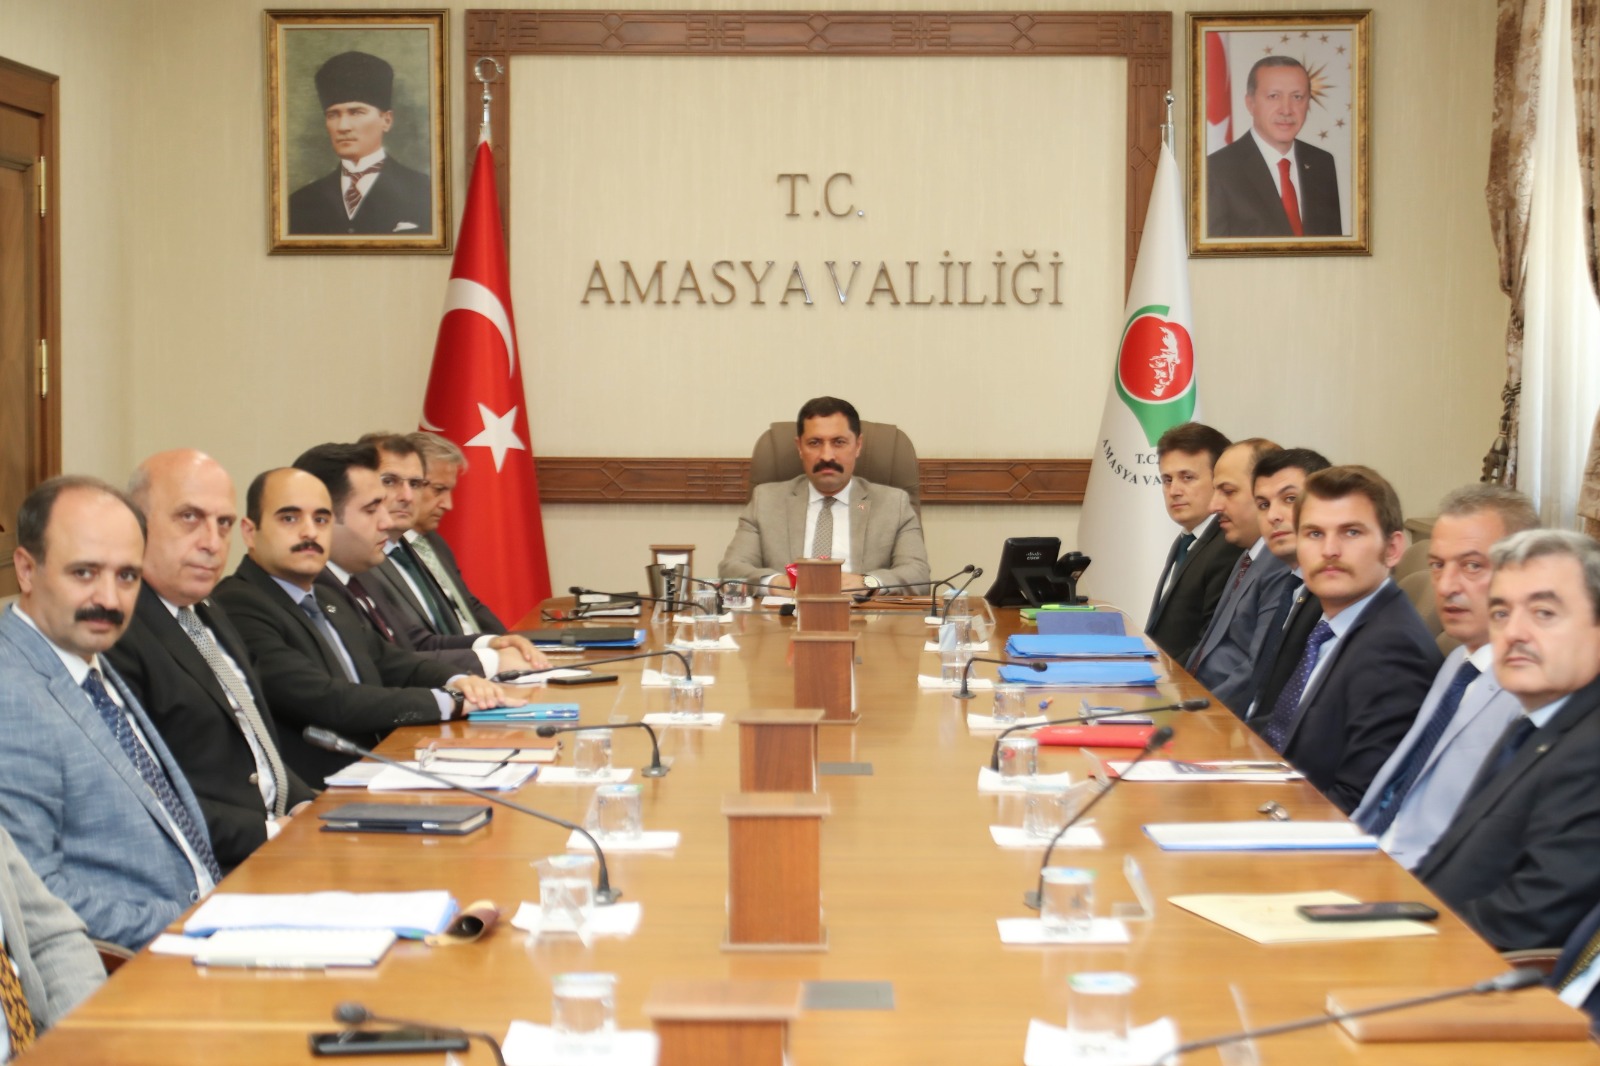 Amasya Valisi Mustafa MASATLI, Amasya İlindeki Kamu Hizmetleri ile Kurban Bayramı İçin Yapılan Hazırlıkların Gözden Geçirildiği Toplantıya Başkanlık Etti